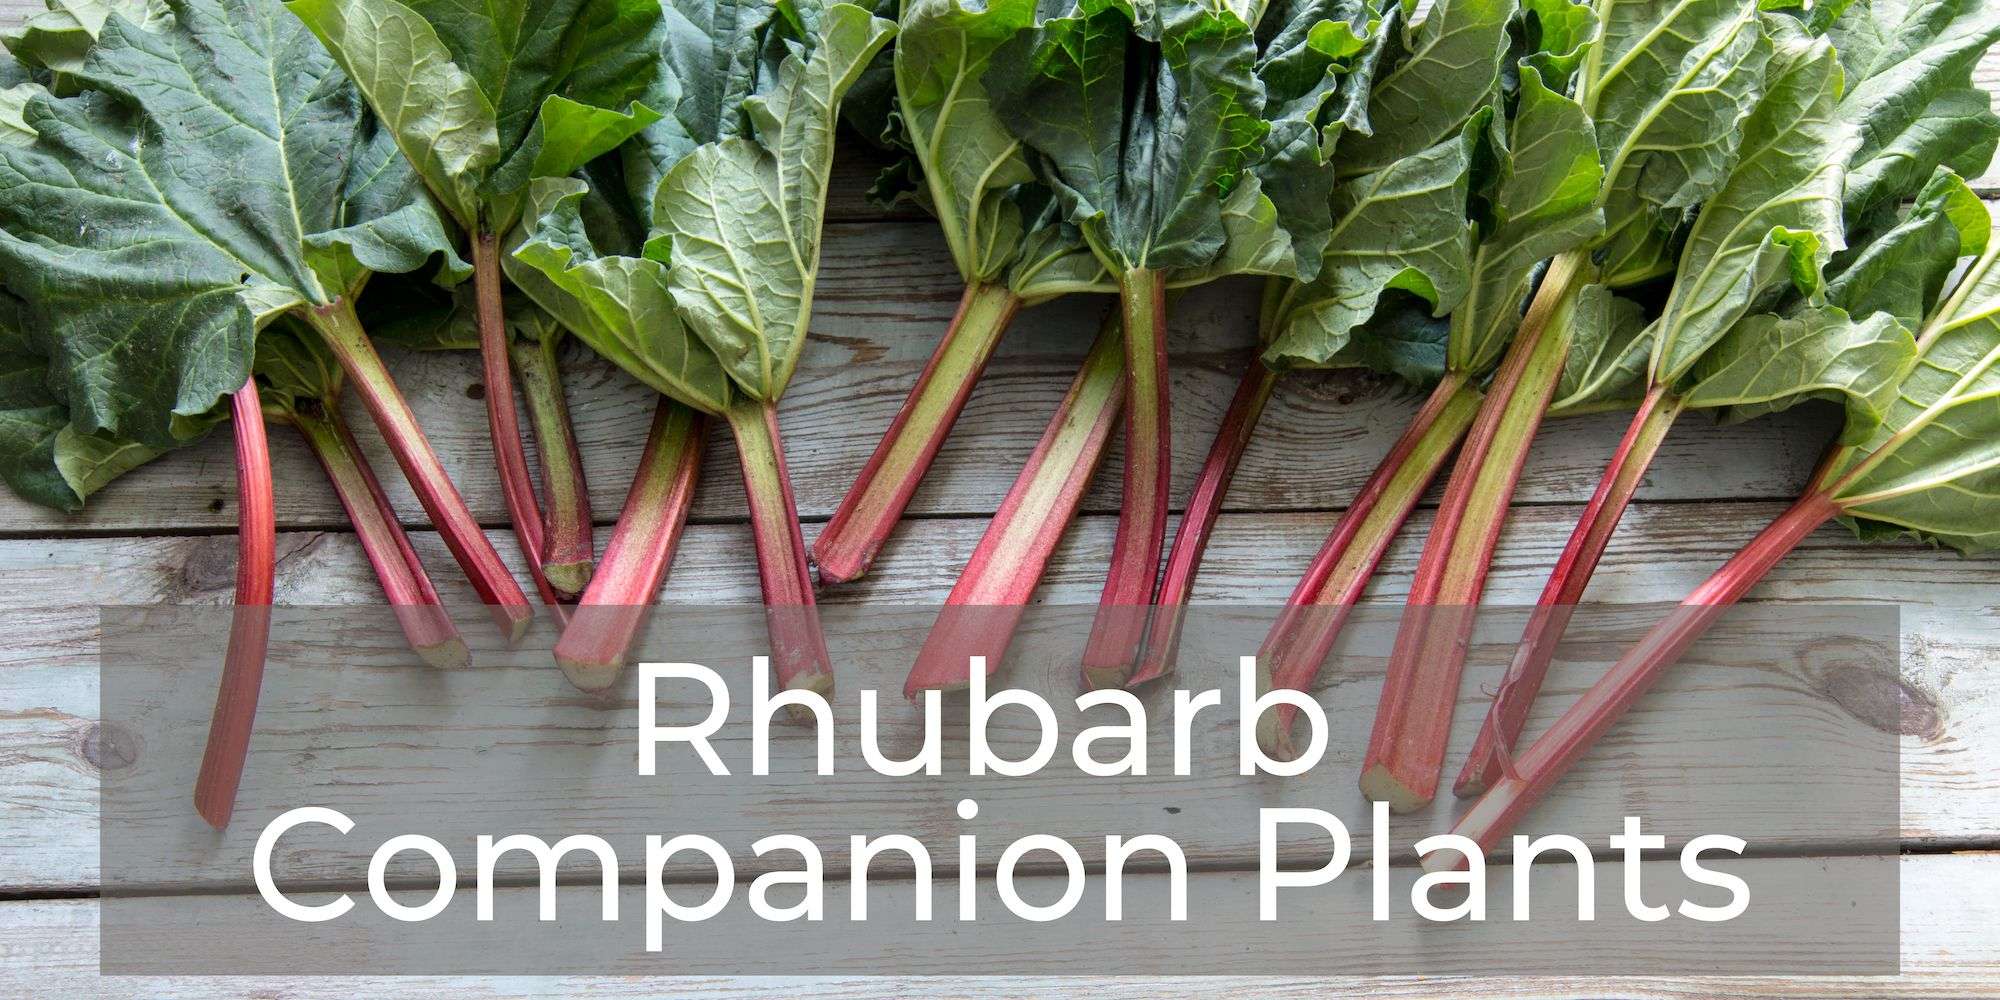 10 Rhubarb Companion Plants